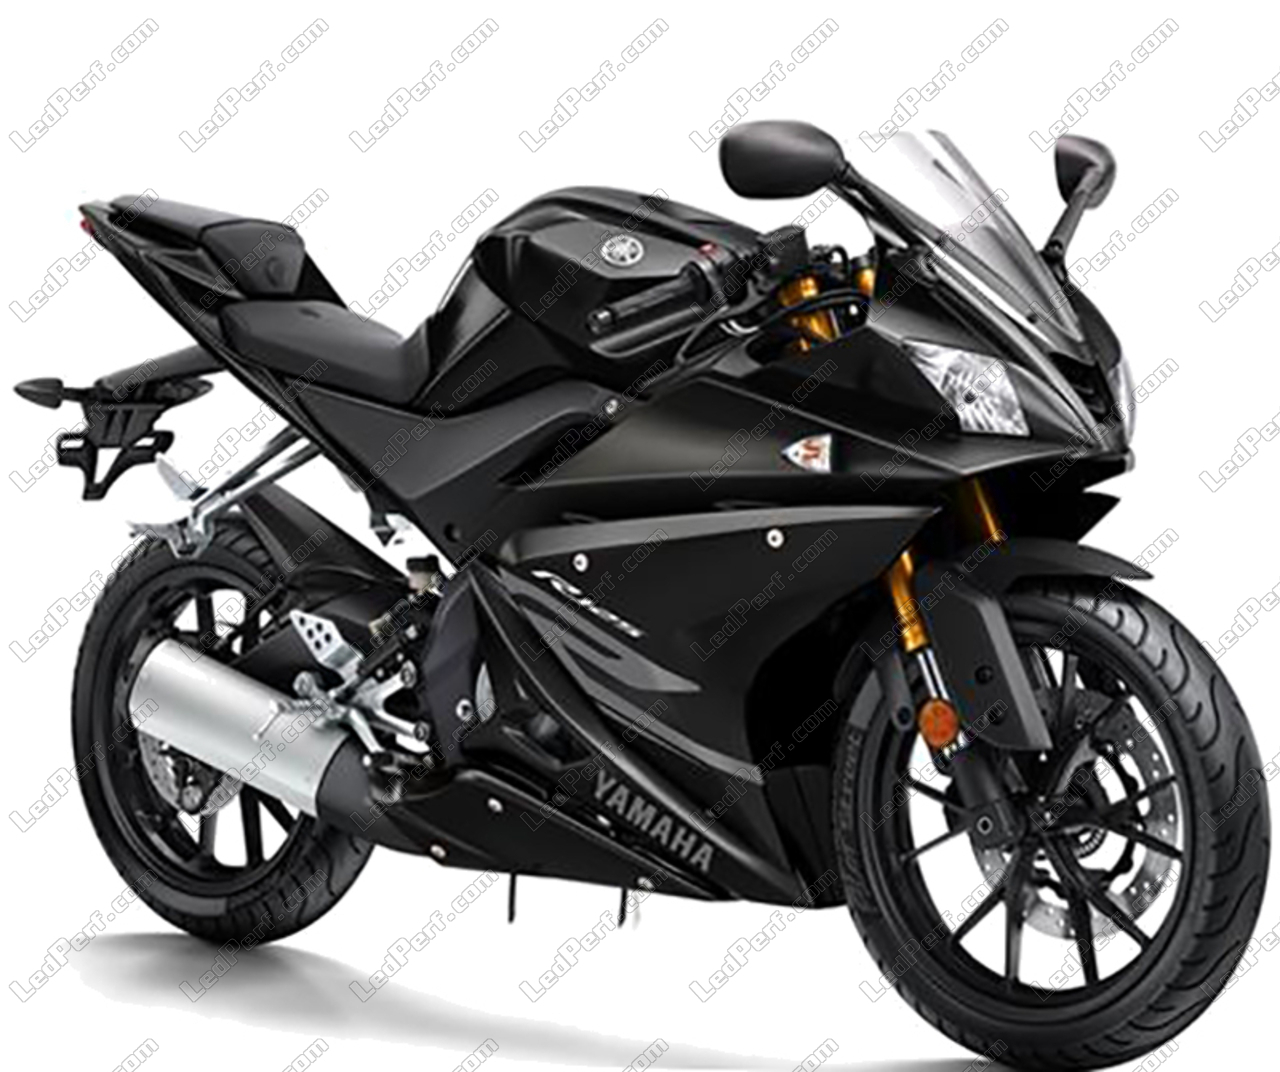 https://www.ledperf.us/images/models/ledperf.com/._1/led-bulbs-kit-for-yamaha-yzf-r125-2014-2018-motorcycle_52802.jpg